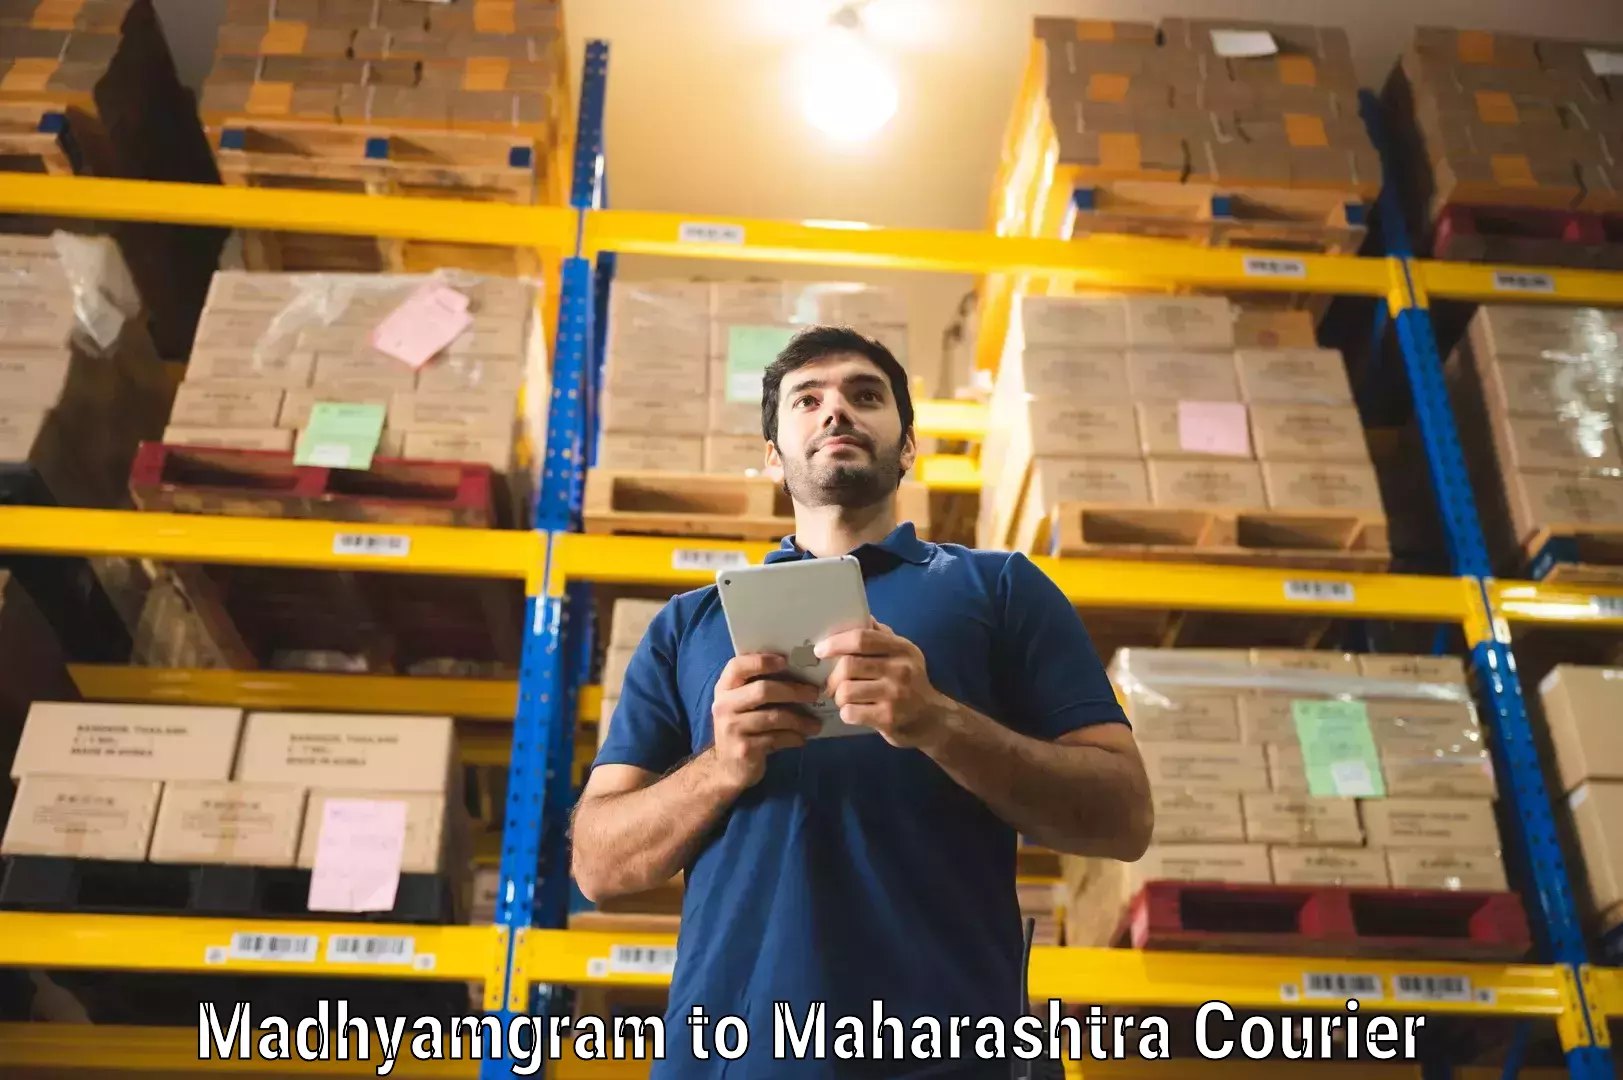 Courier service innovation Madhyamgram to Maharashtra